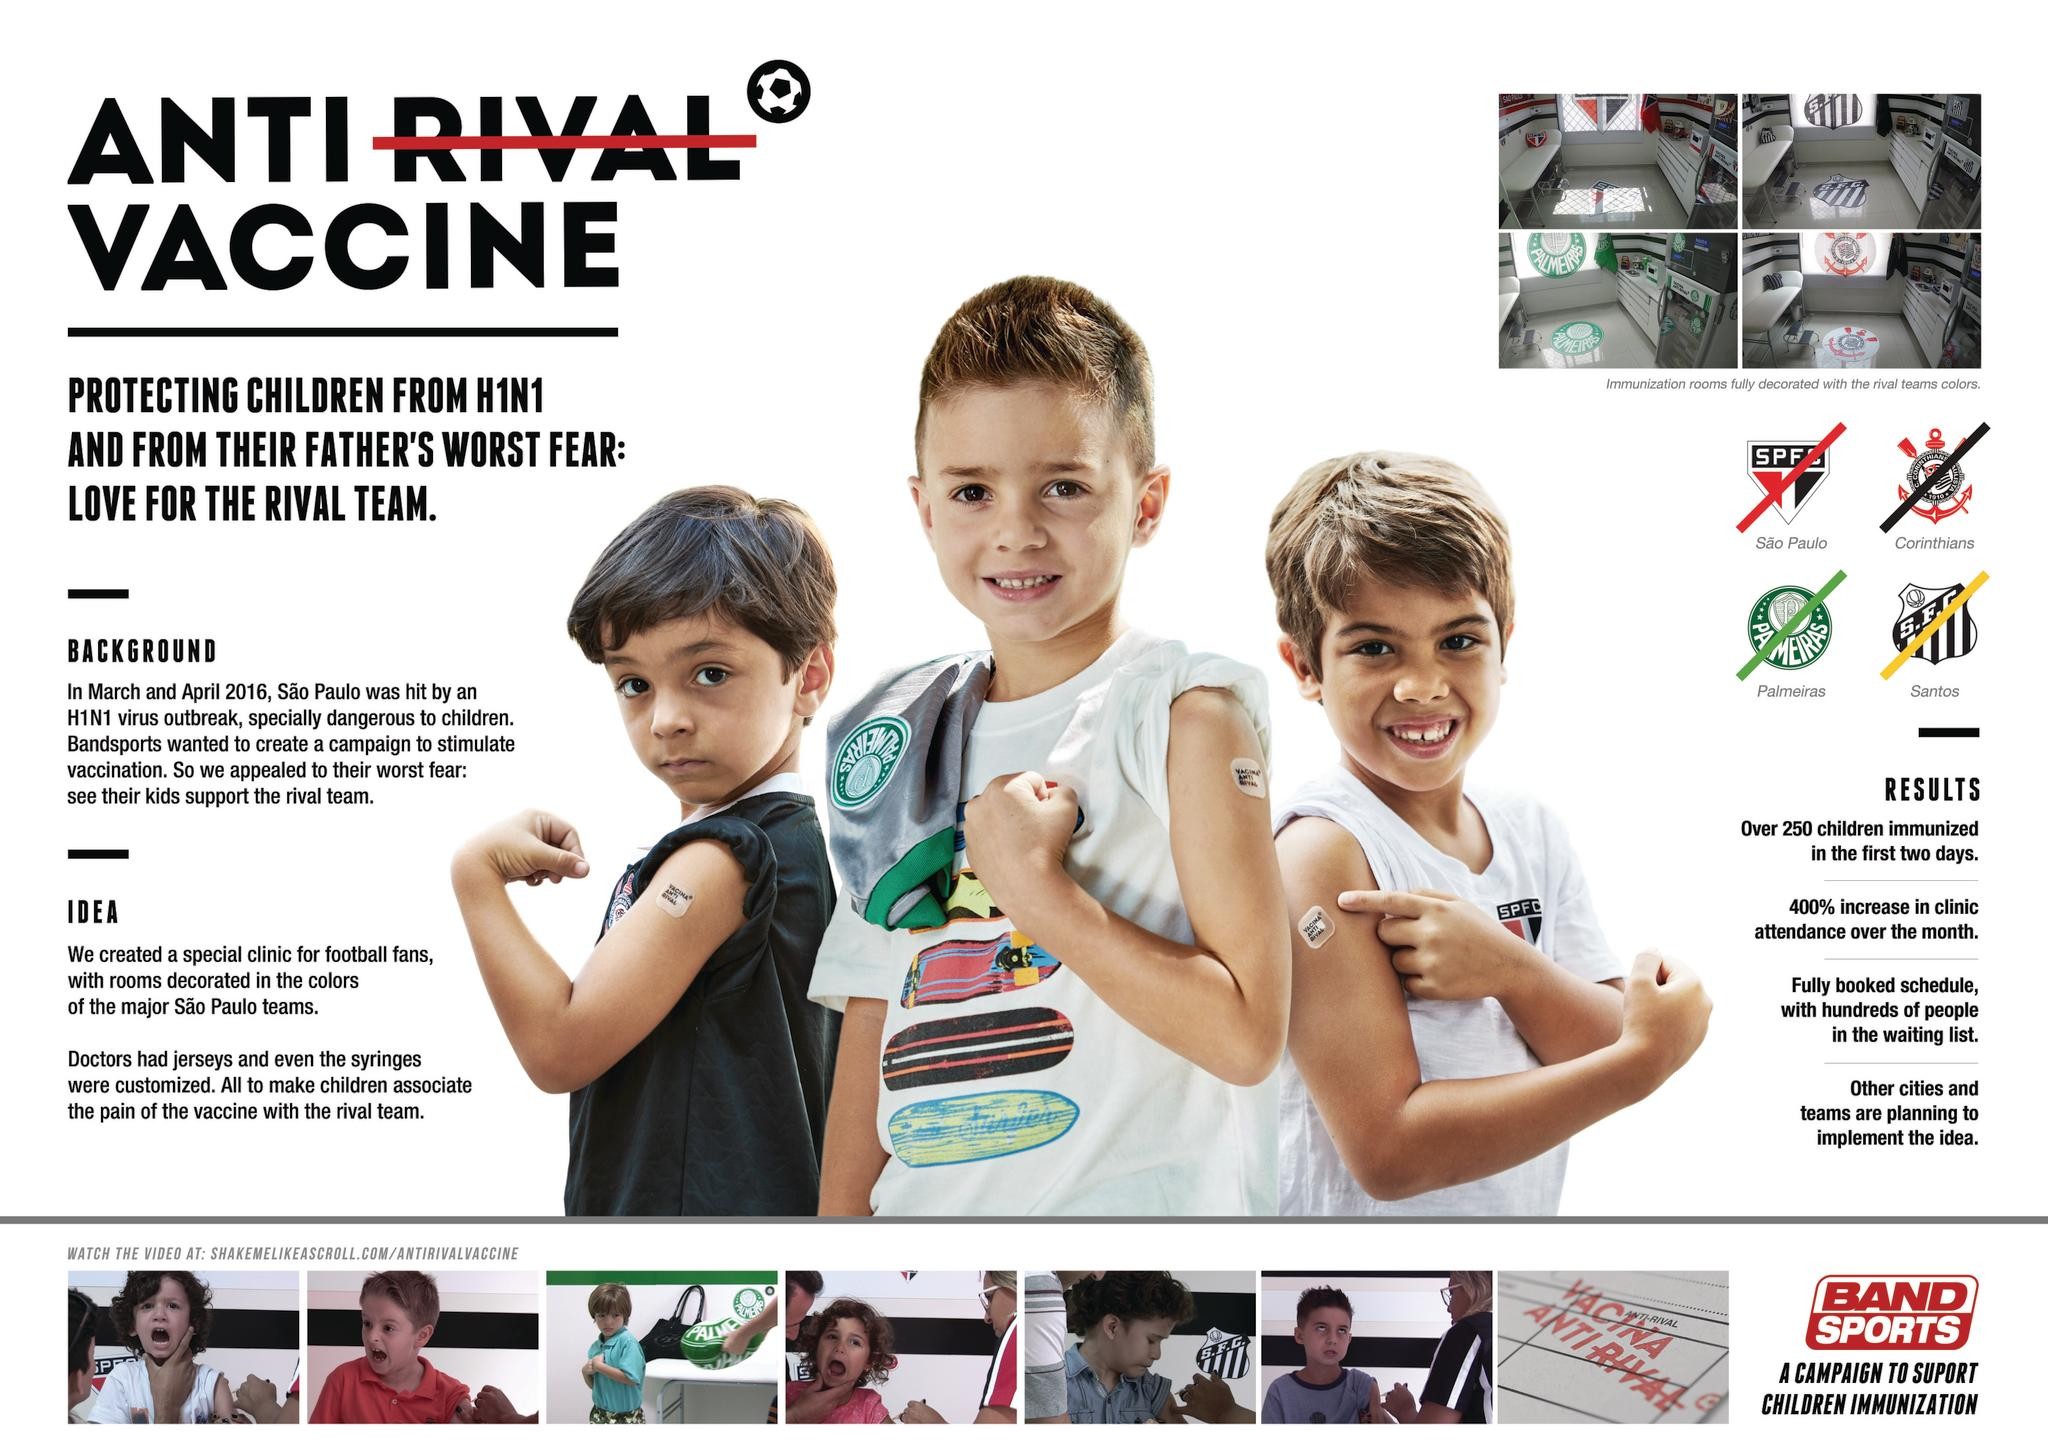 Anti-Rival Vaccine